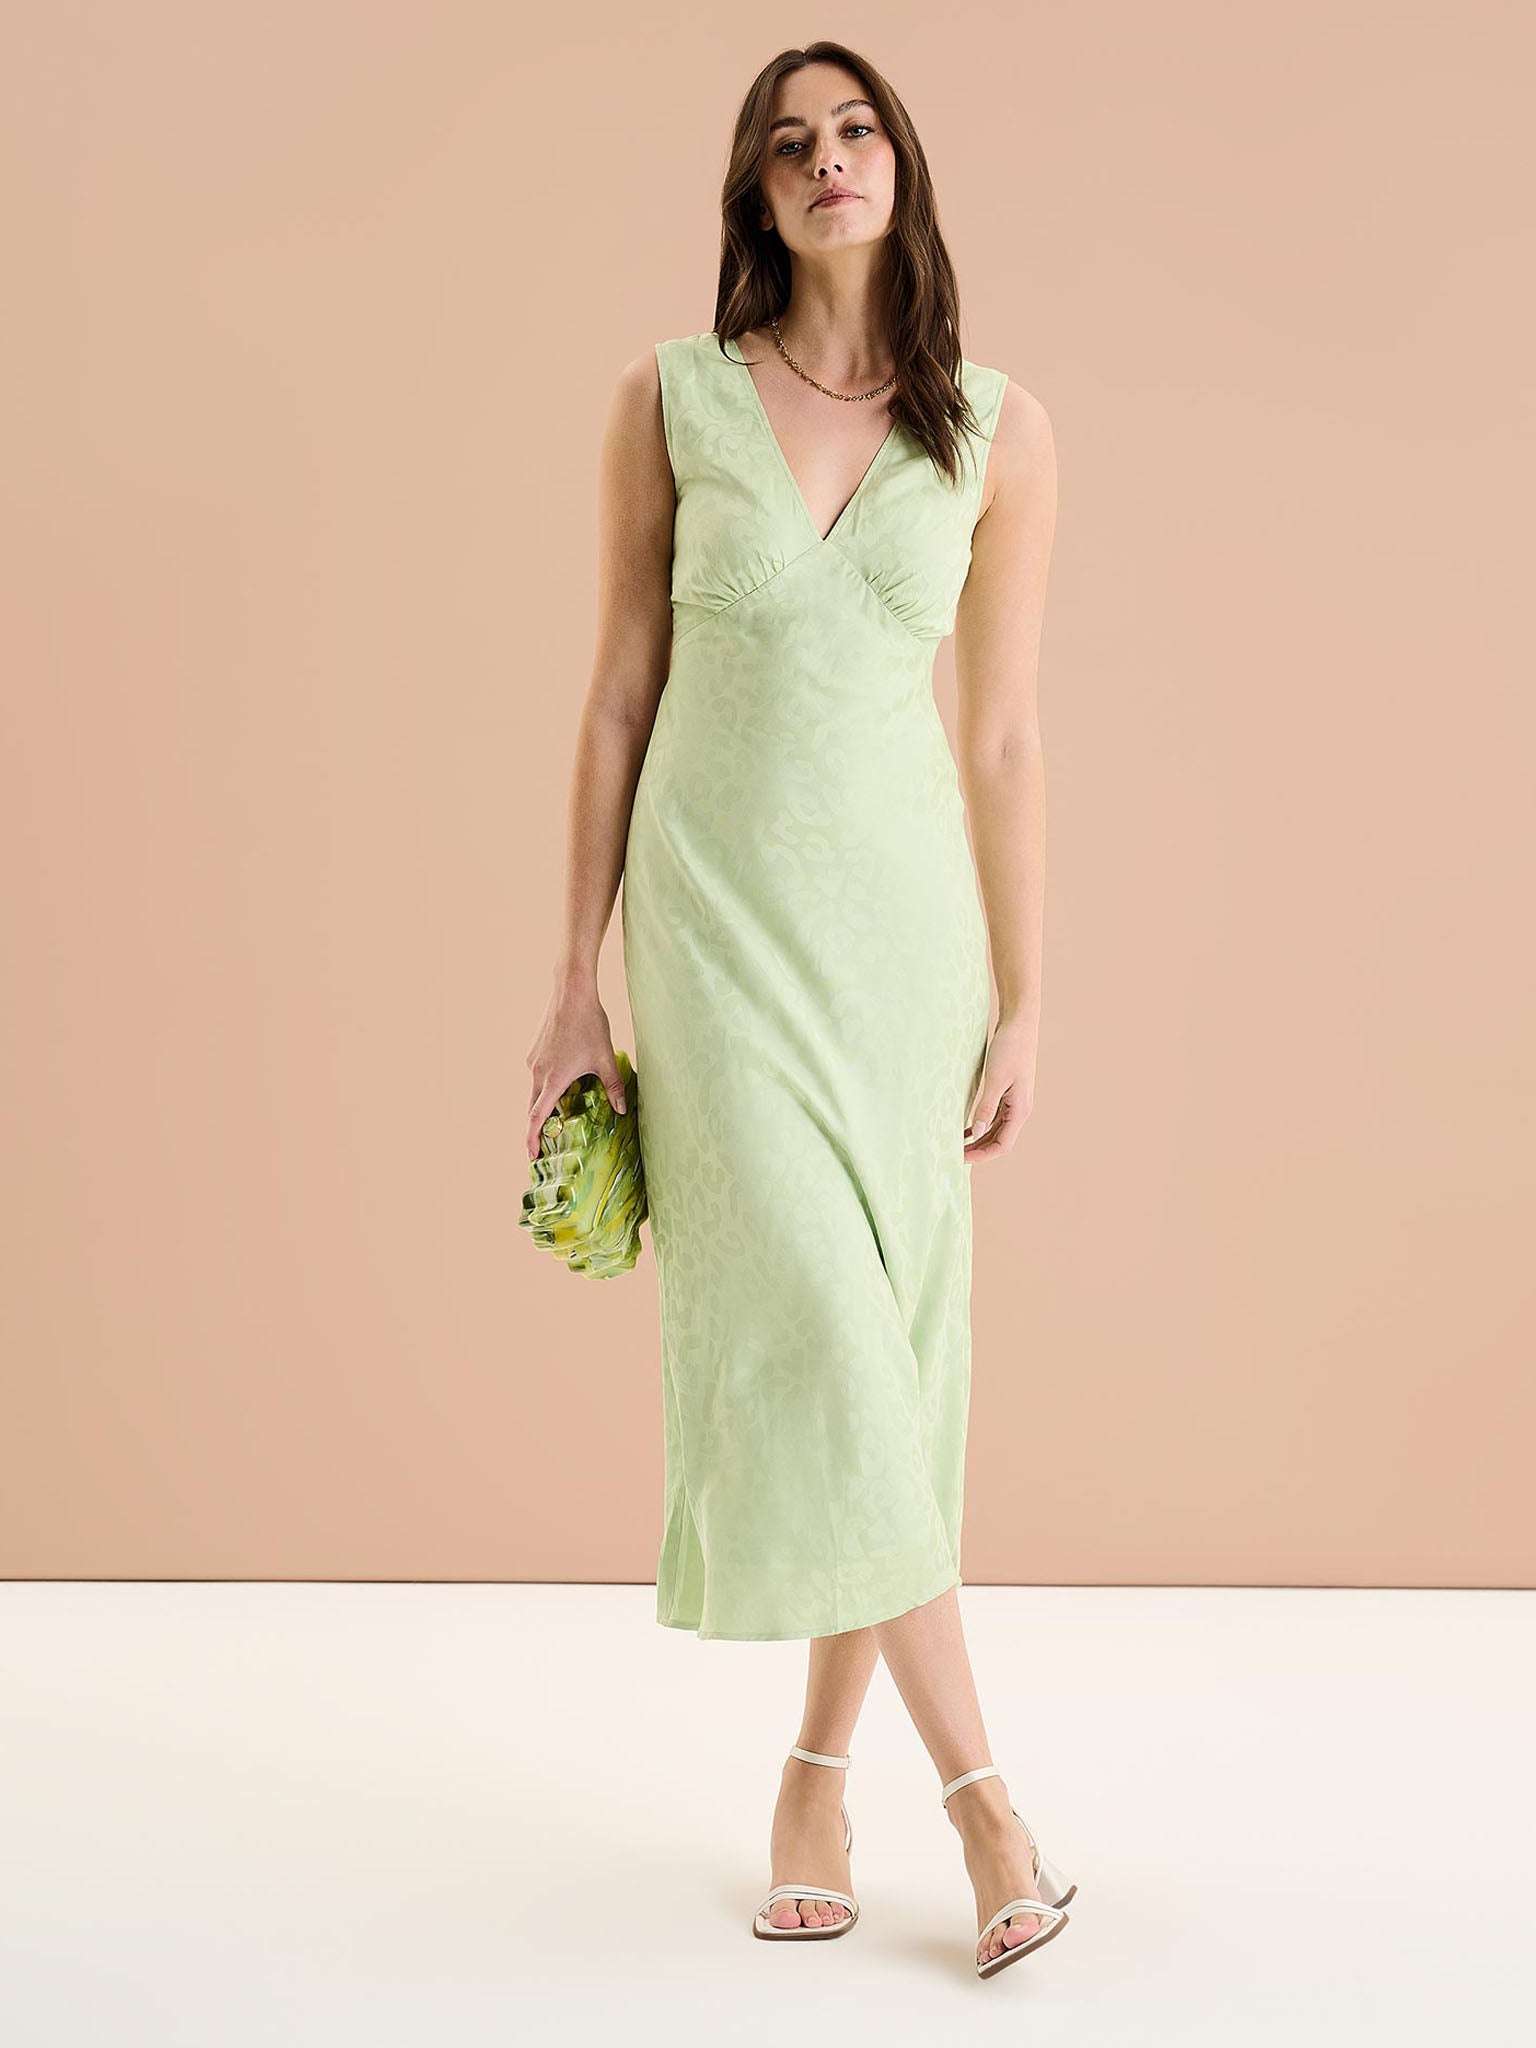 Iris Maxi Dress in Pistachio Green